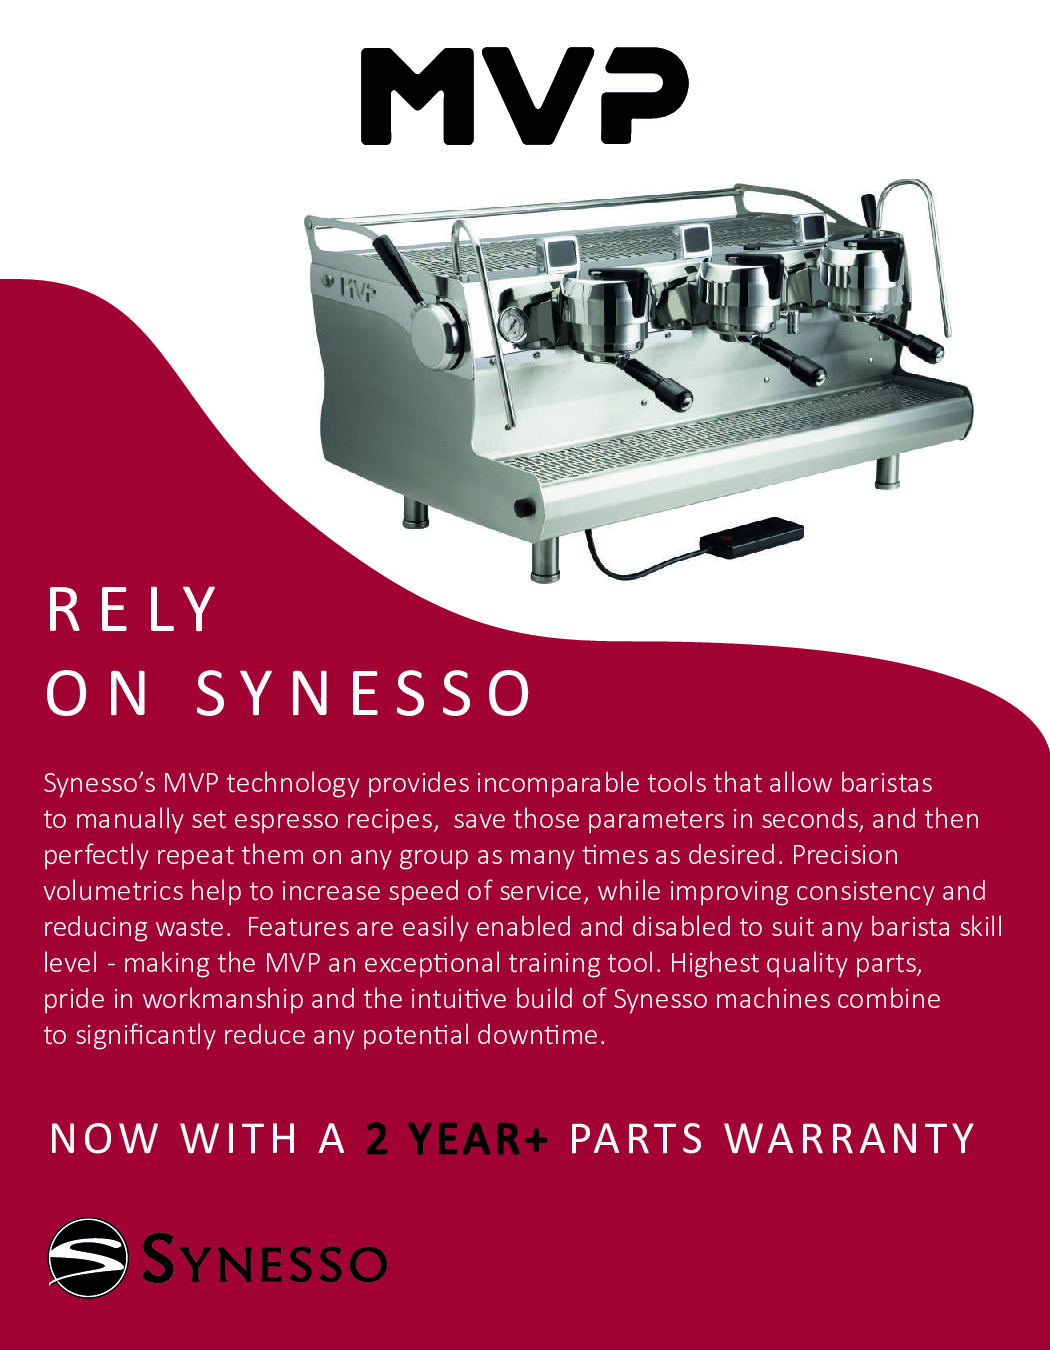 Synesso MVP 3 GR Espresso Cappuccino Machine w/ 3-Group, 12.3-Lt. Tanks, Semi-Automatic